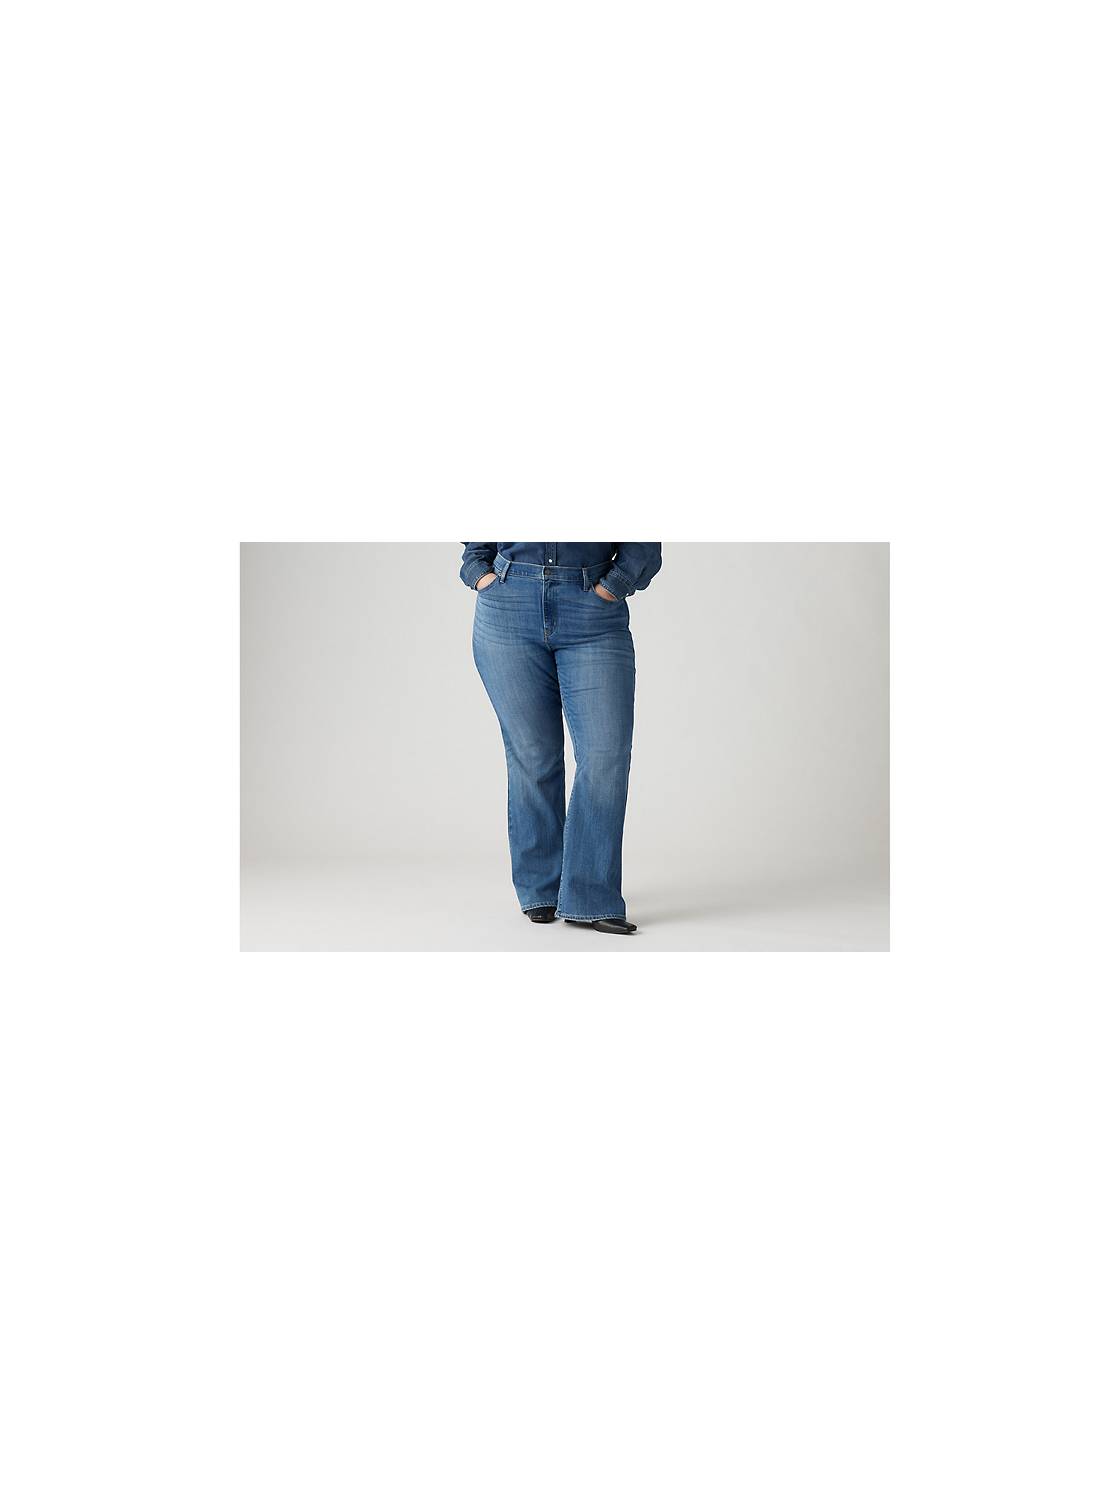 Levis Women's Classic Boot Cut Jeans Plus Size, Women's Plus Size